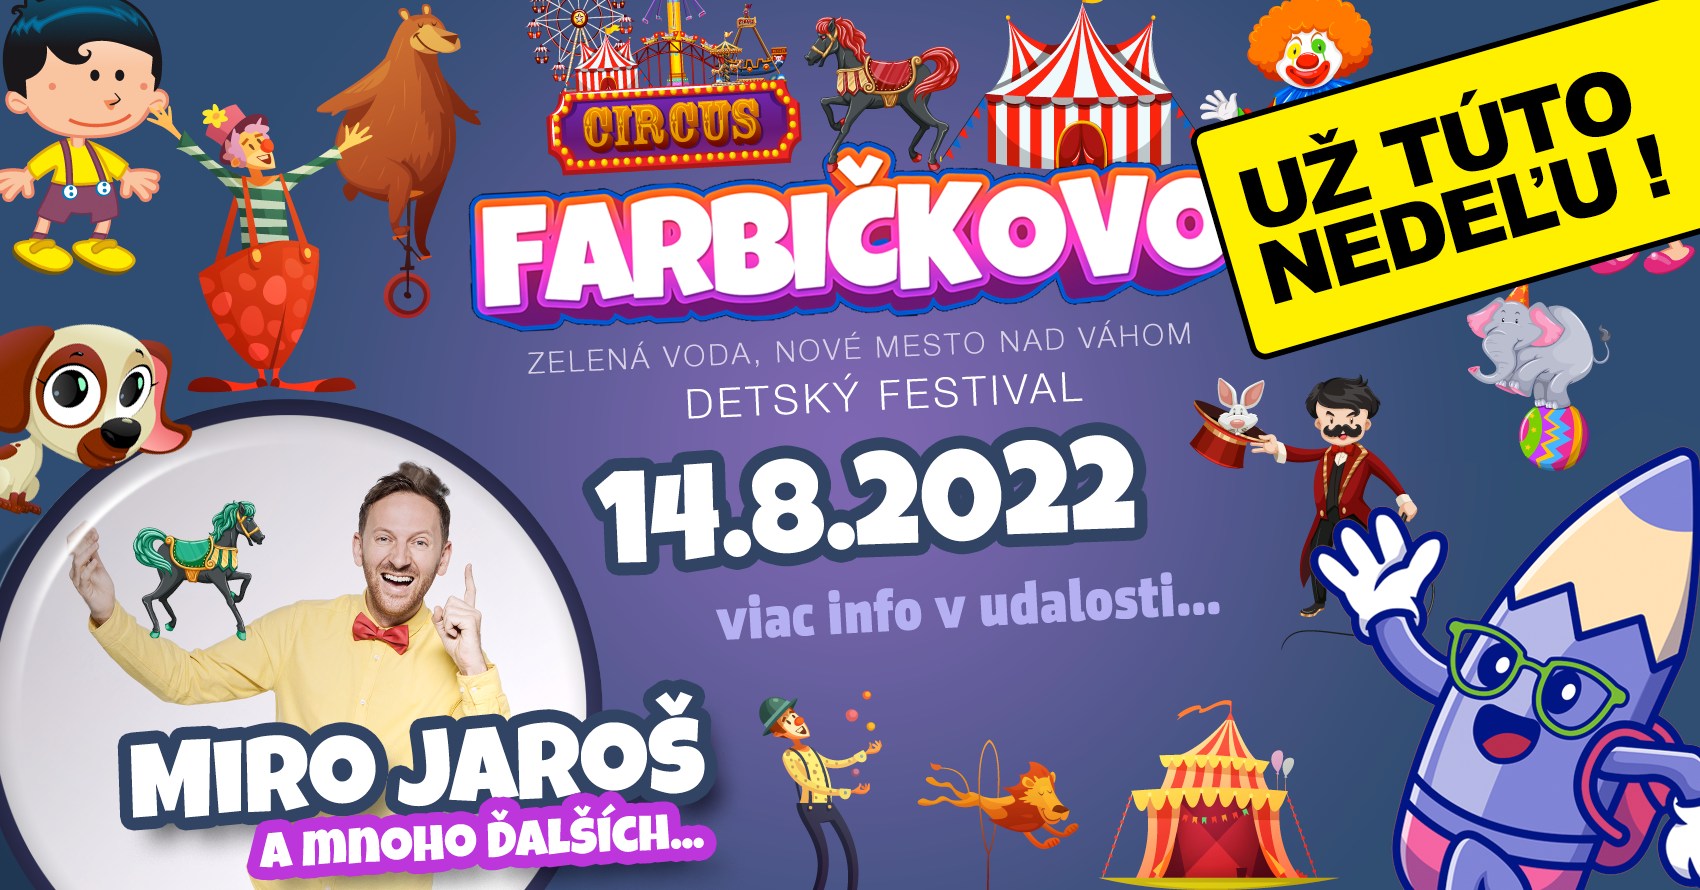 Detský festival Farbičkovo